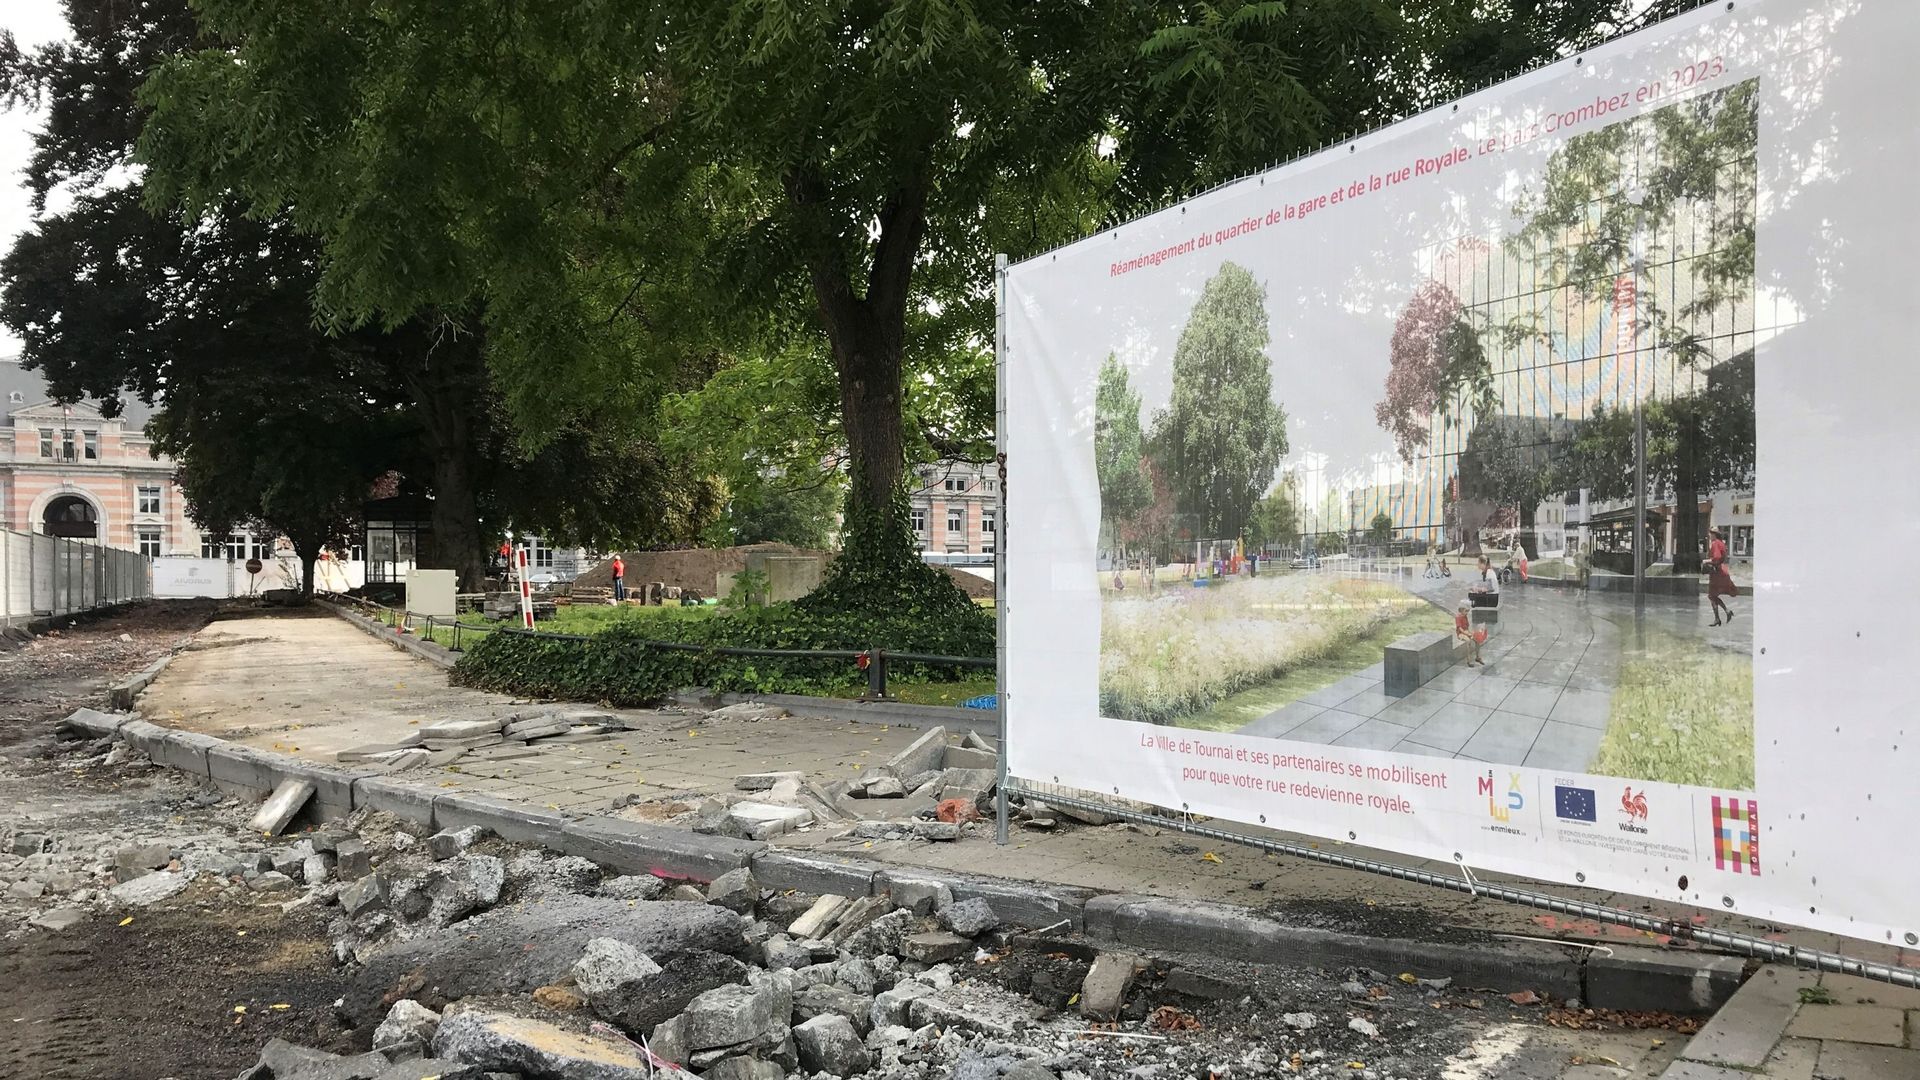 Les travaux préparatoires se terminent. Dès le 20 septembre, le chantier de rénovation de la rue Royale et du quartier de la gare débutera du côté de l’Escaut.